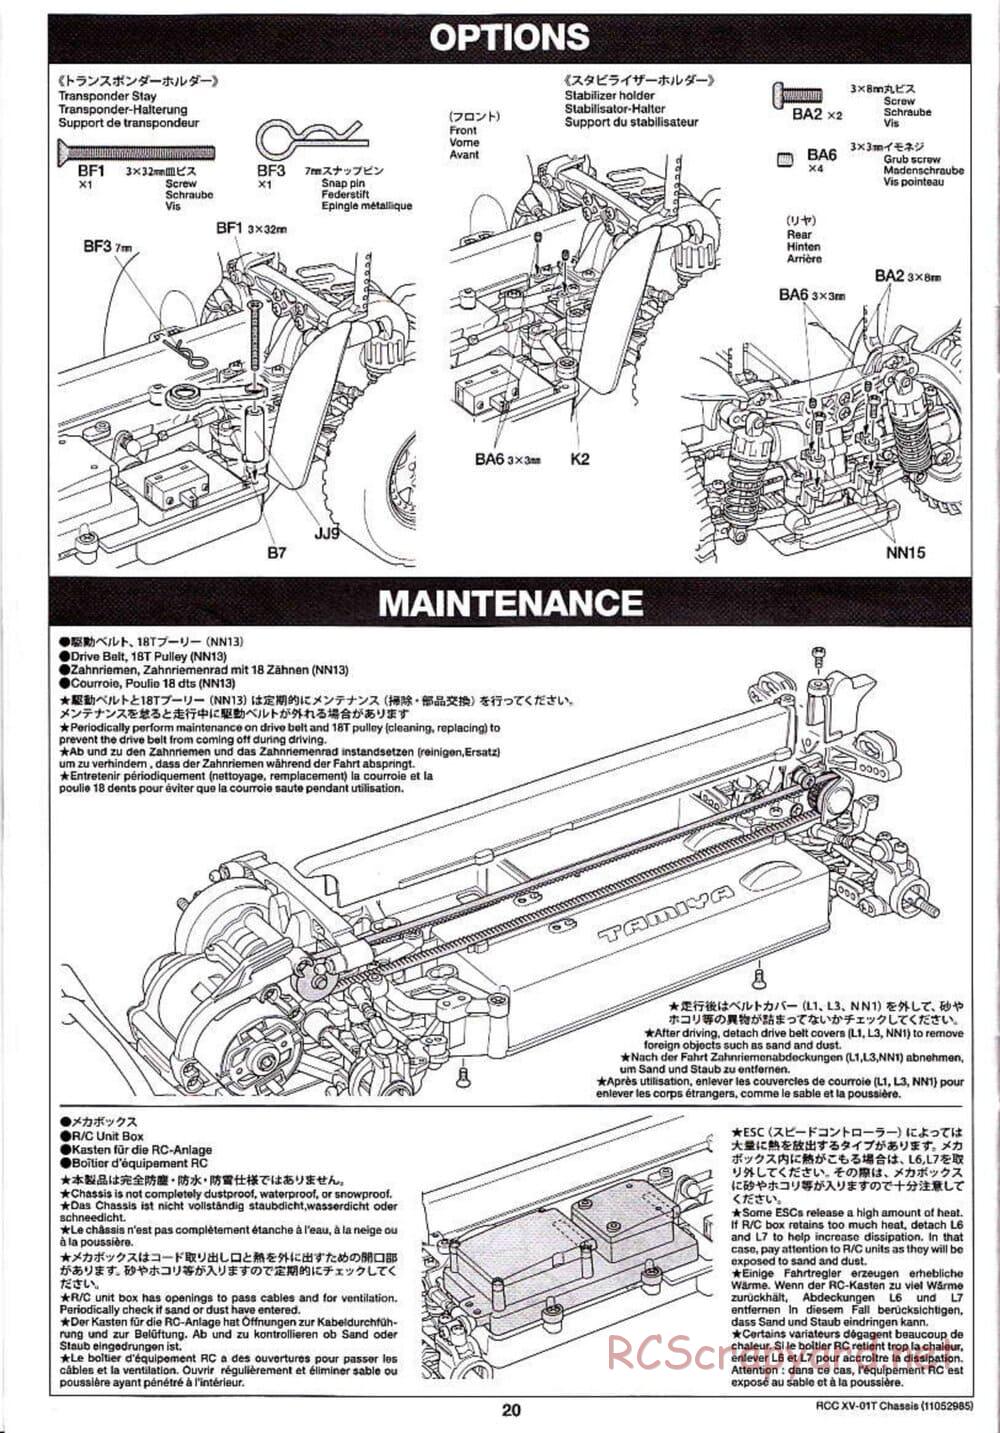 Tamiya - XV-01T Chassis - Manual - Page 20